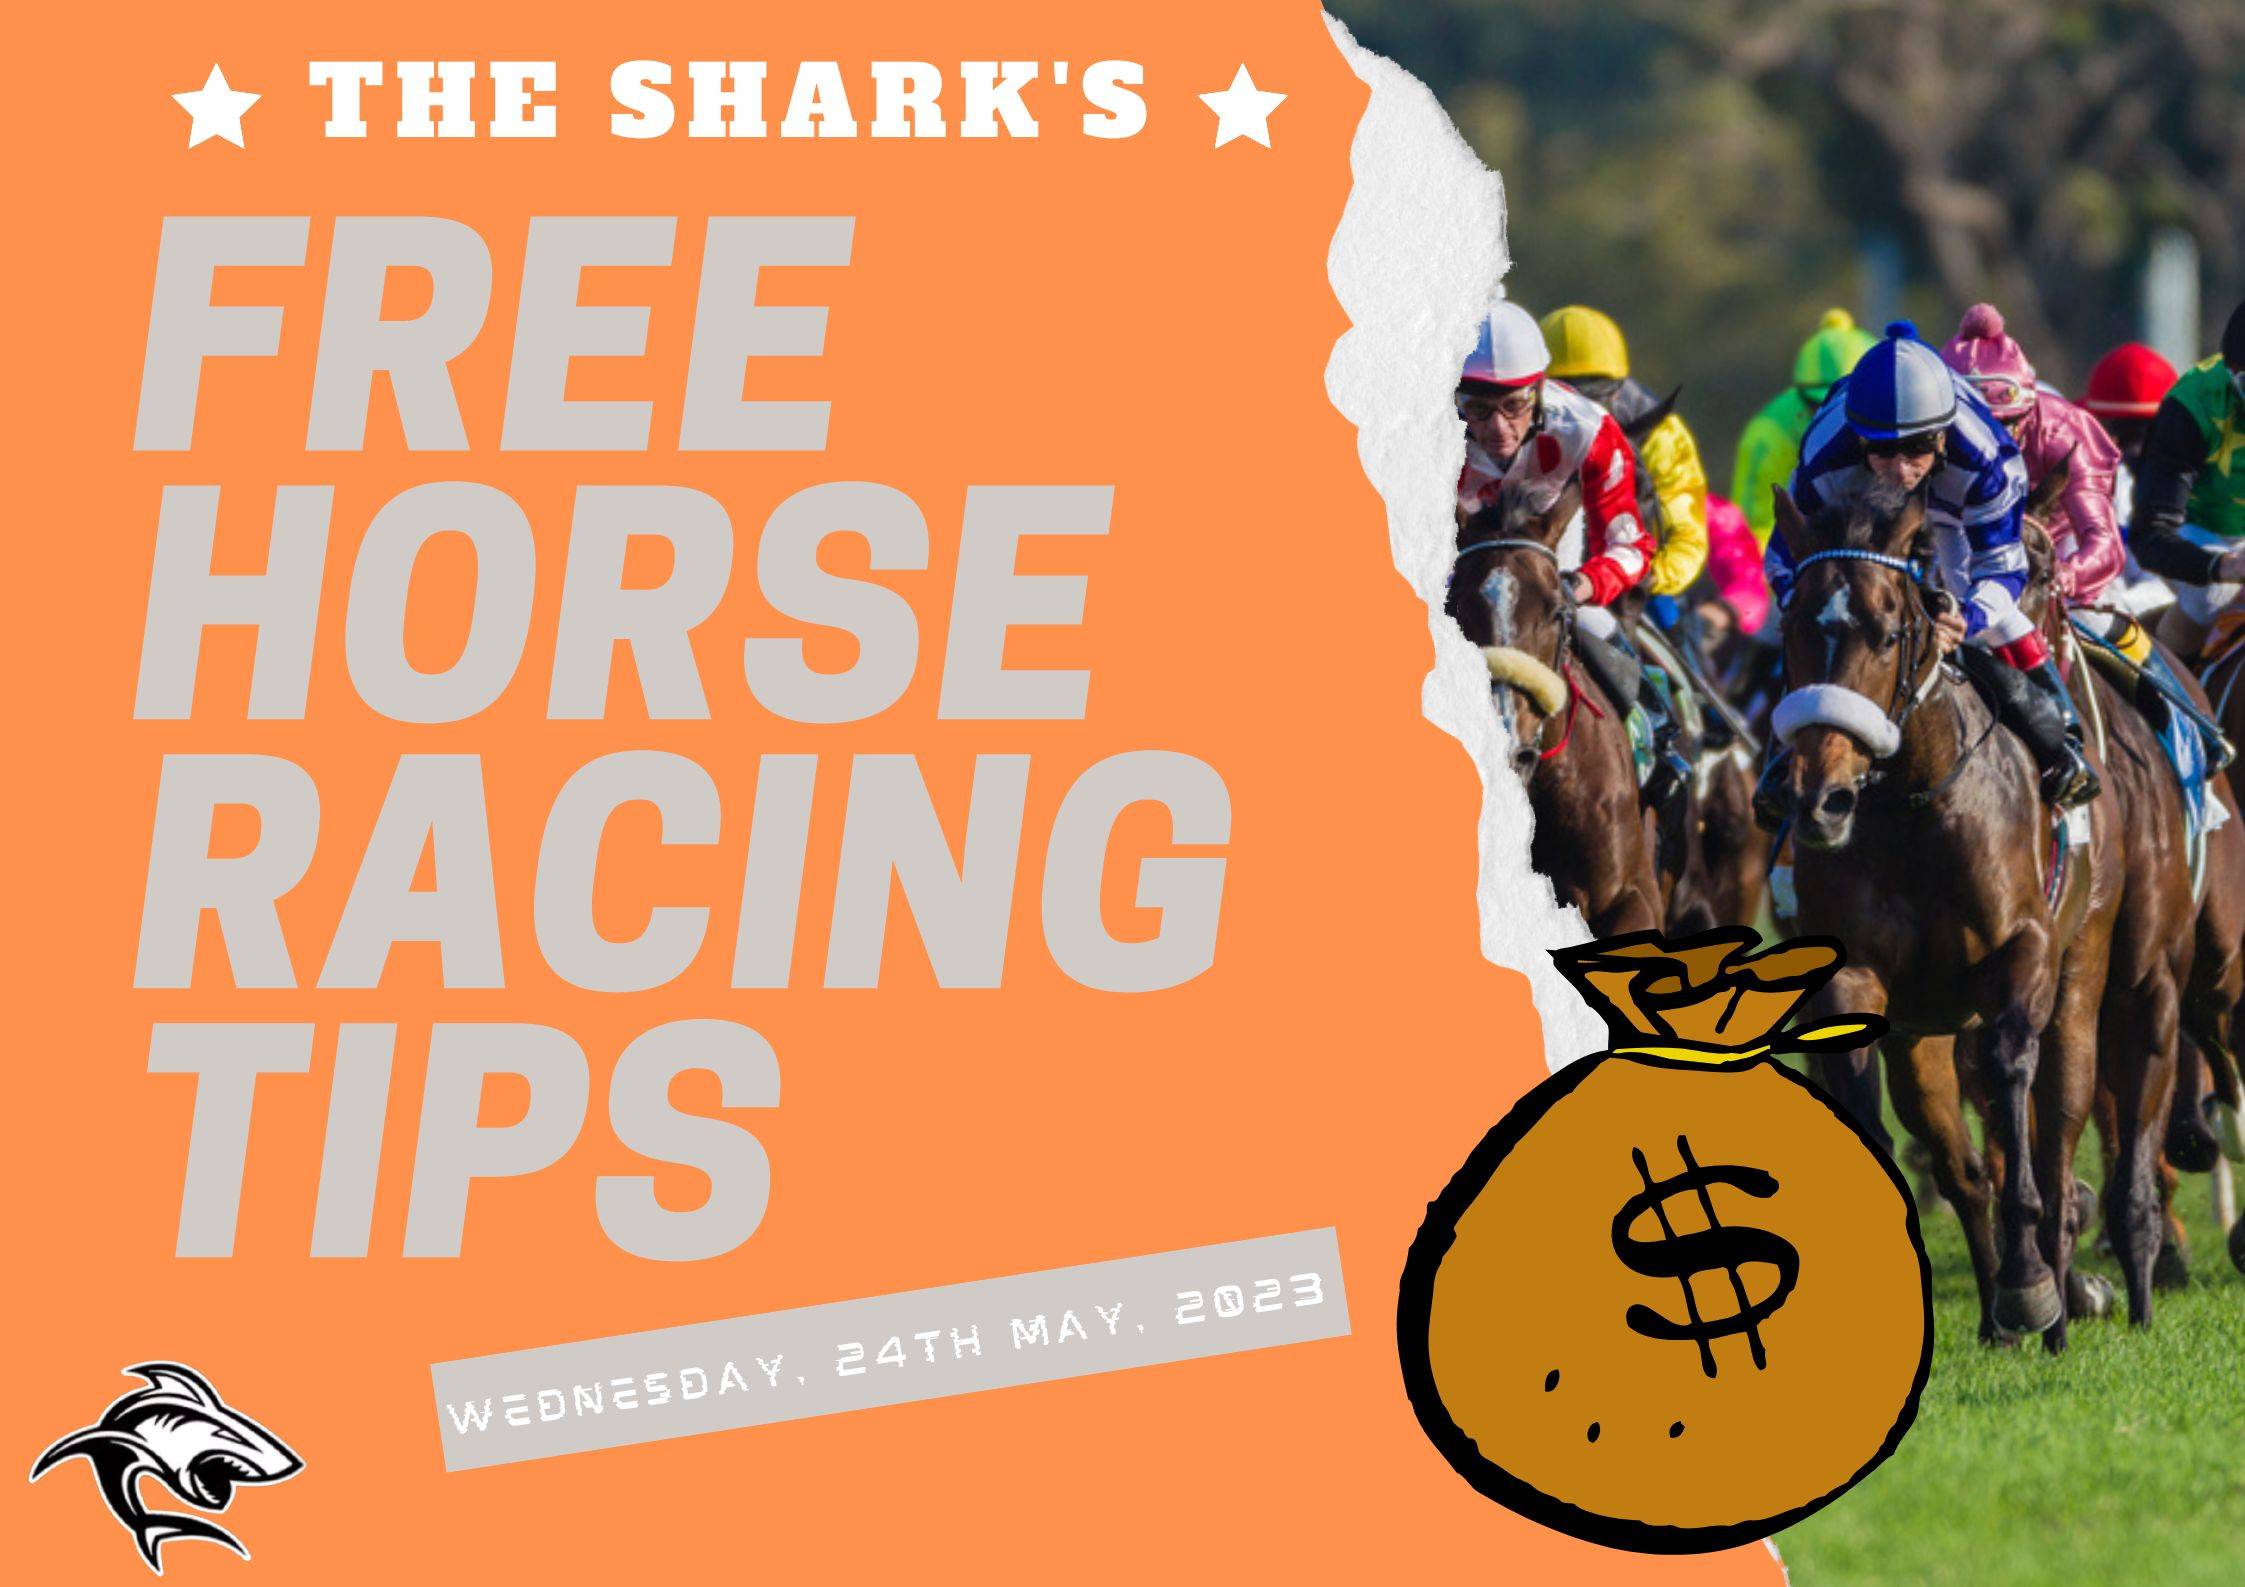 Free Horse Racing Tips - 24th May